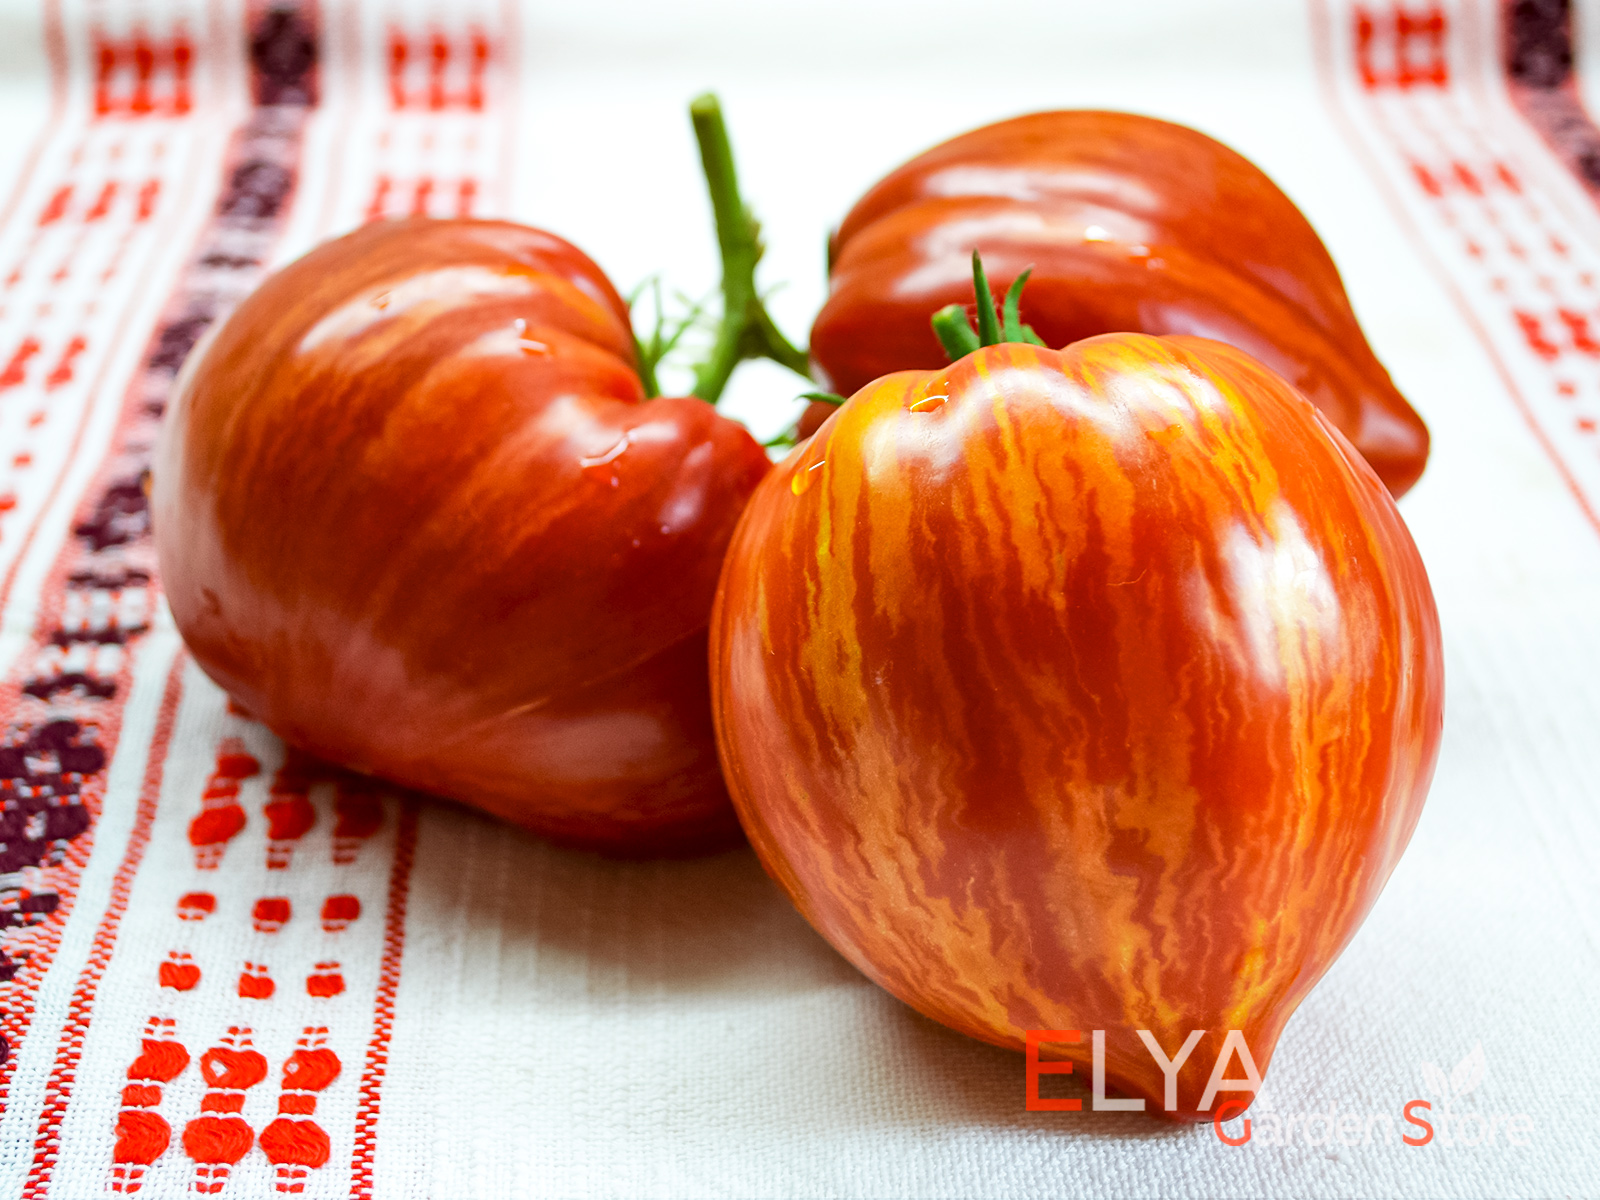 Каменистый Ручей Крапчатый - коллекционный орт томата гном с отличной урожайностью и насыщенным вкусом - фото магазина семян Elya Garden